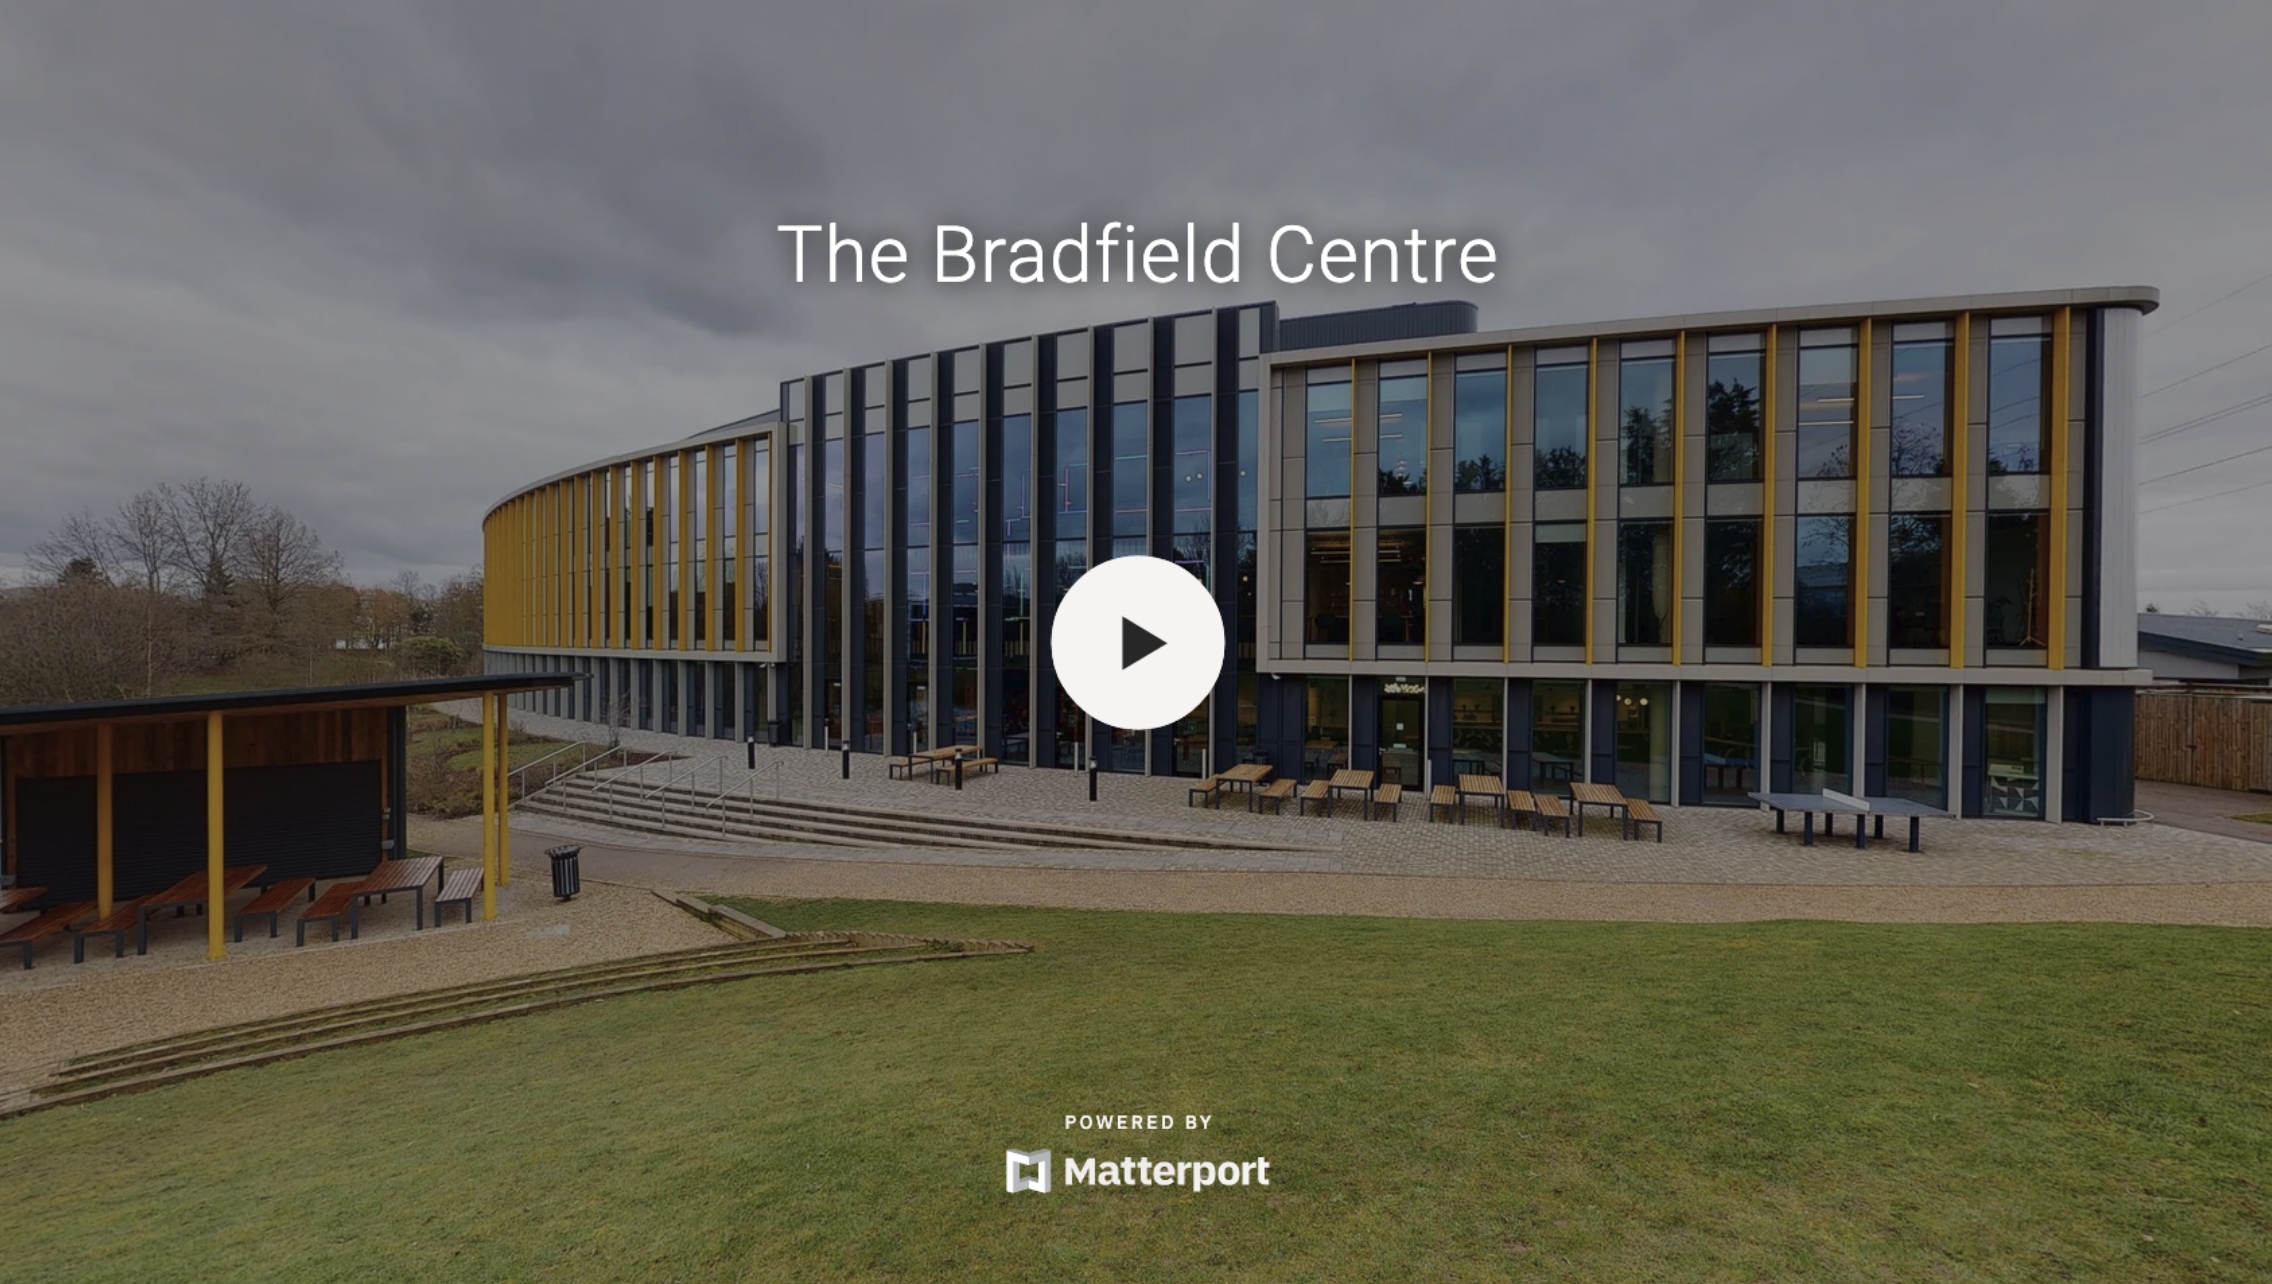 Bradfield centre interactive virtual tour